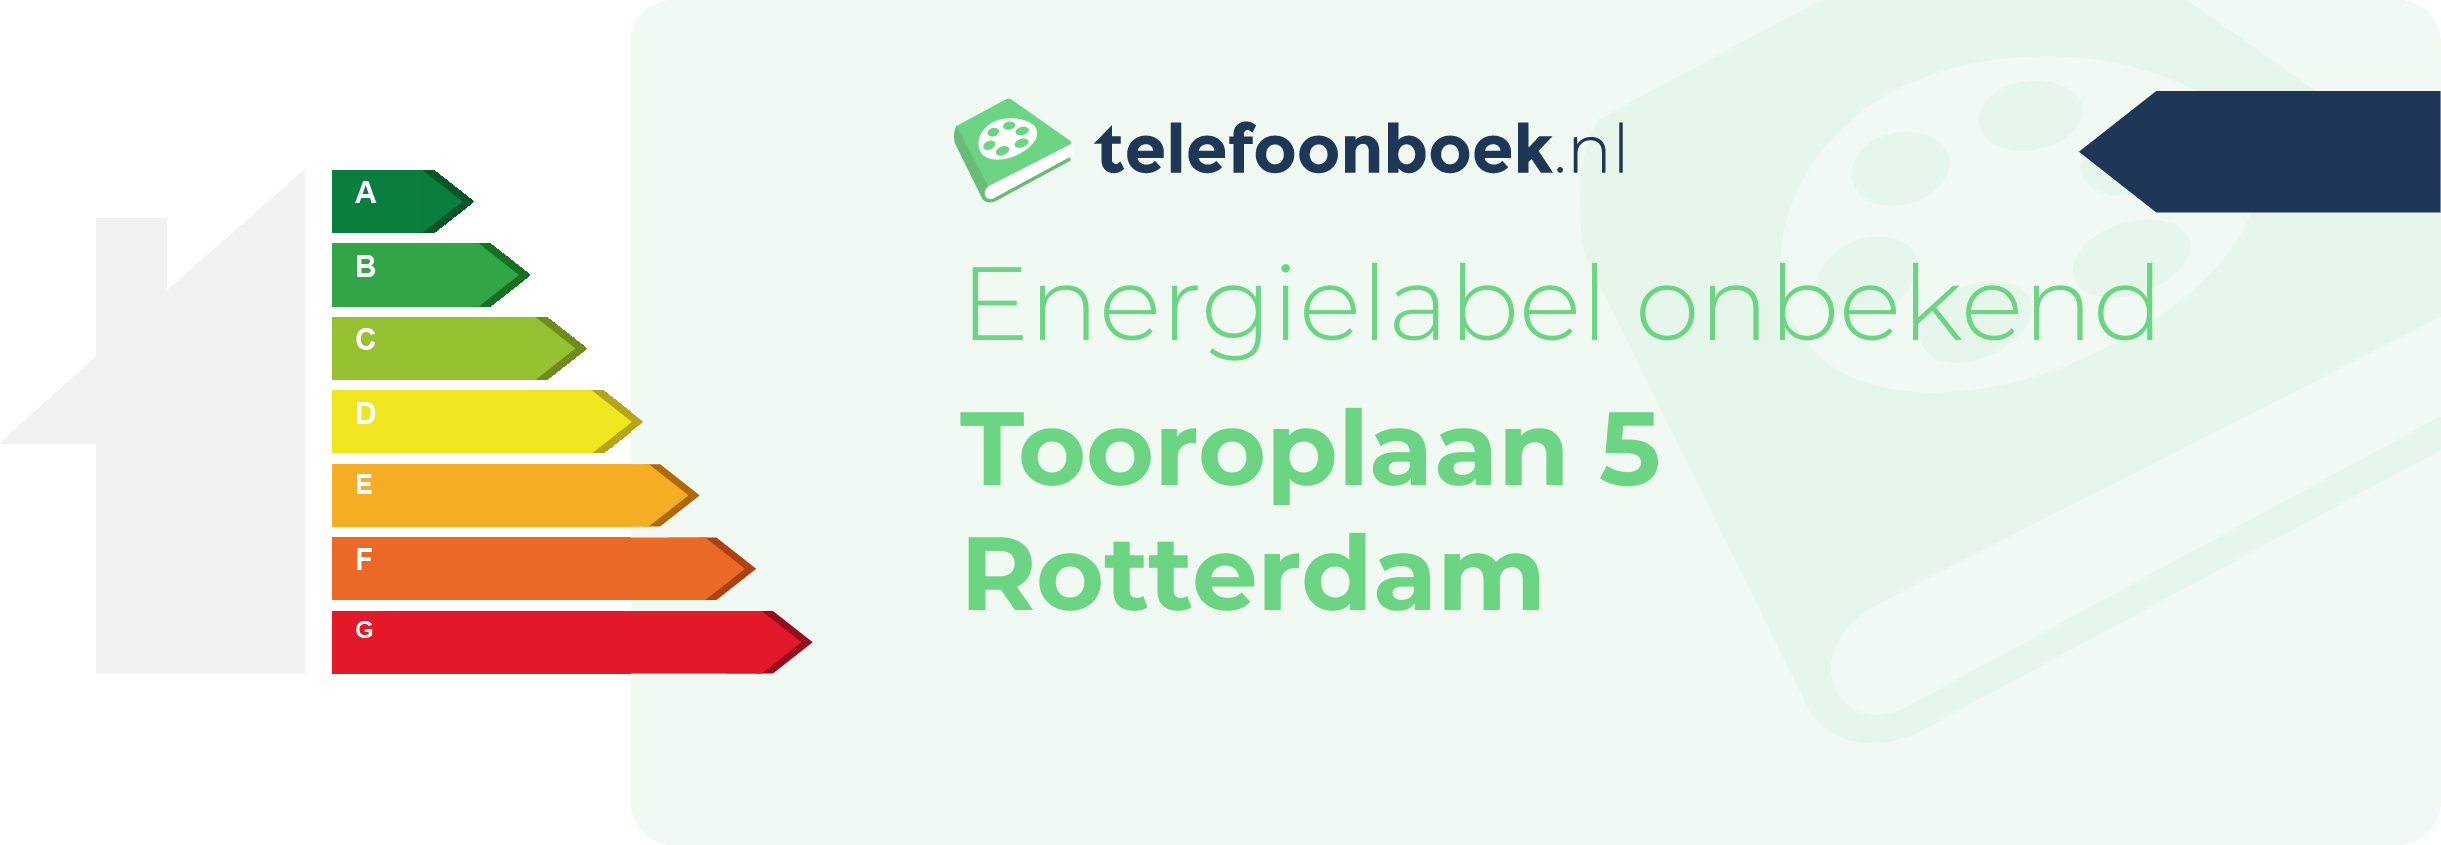 Energielabel Tooroplaan 5 Rotterdam